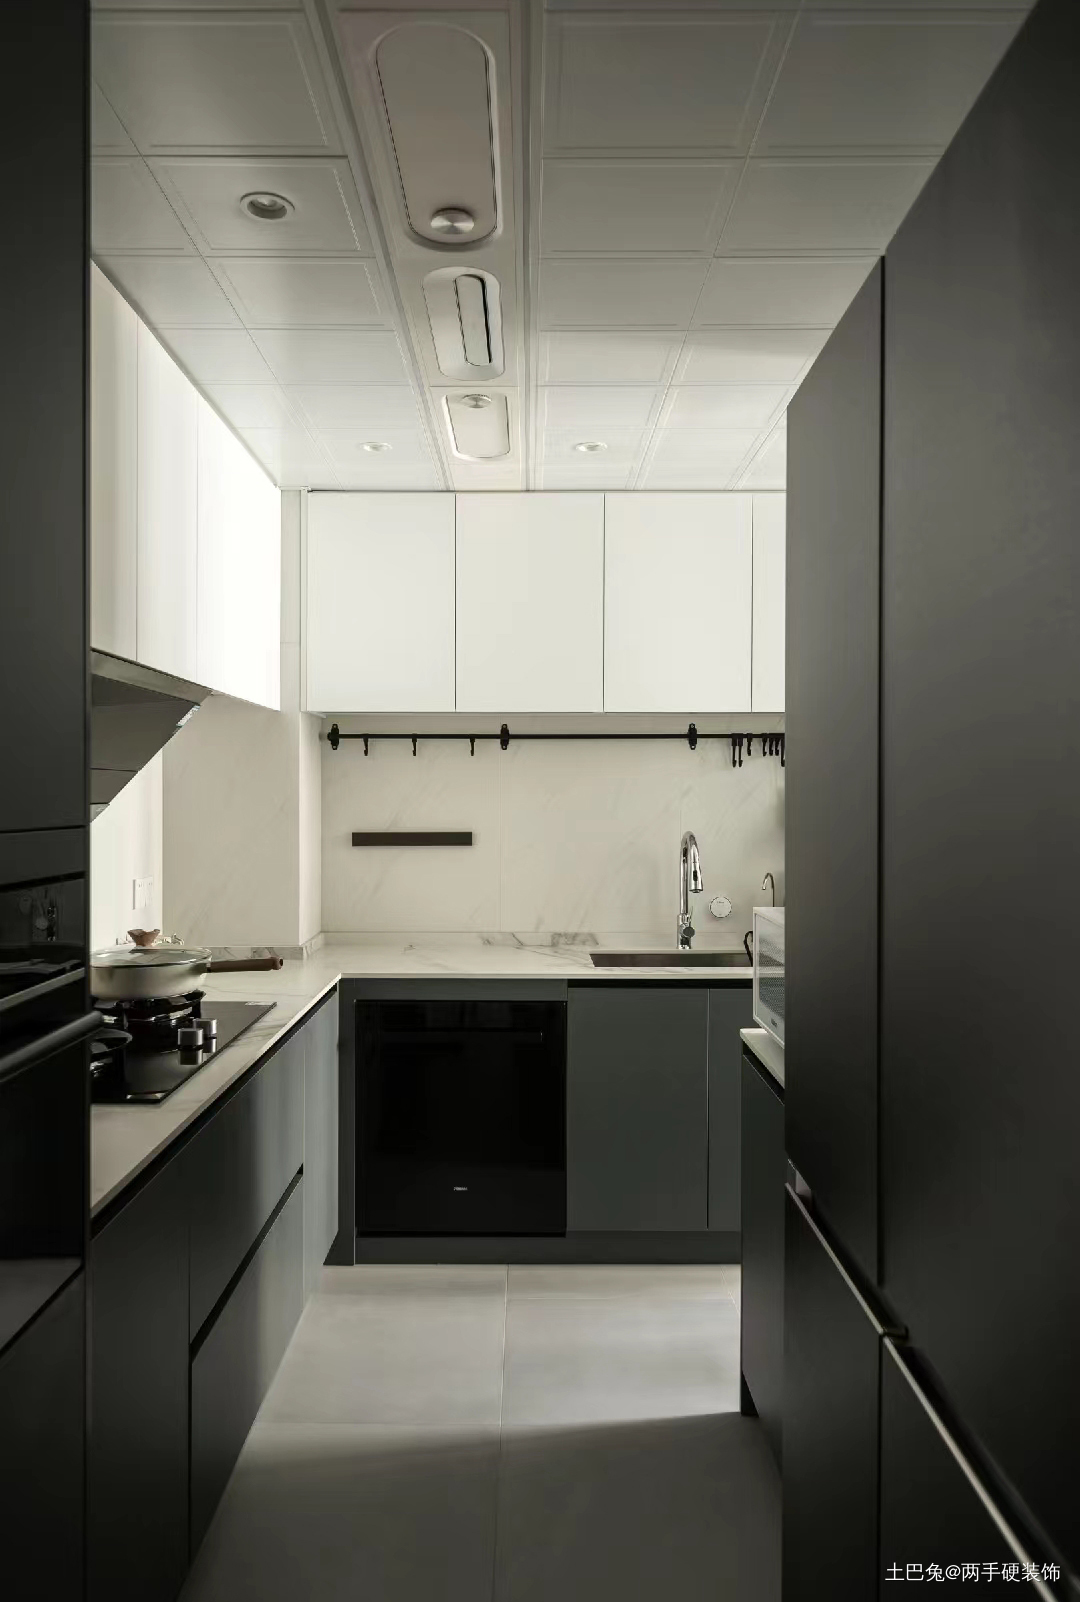 一个建筑师的家90㎡两居室潮流混搭厨房设计图片赏析